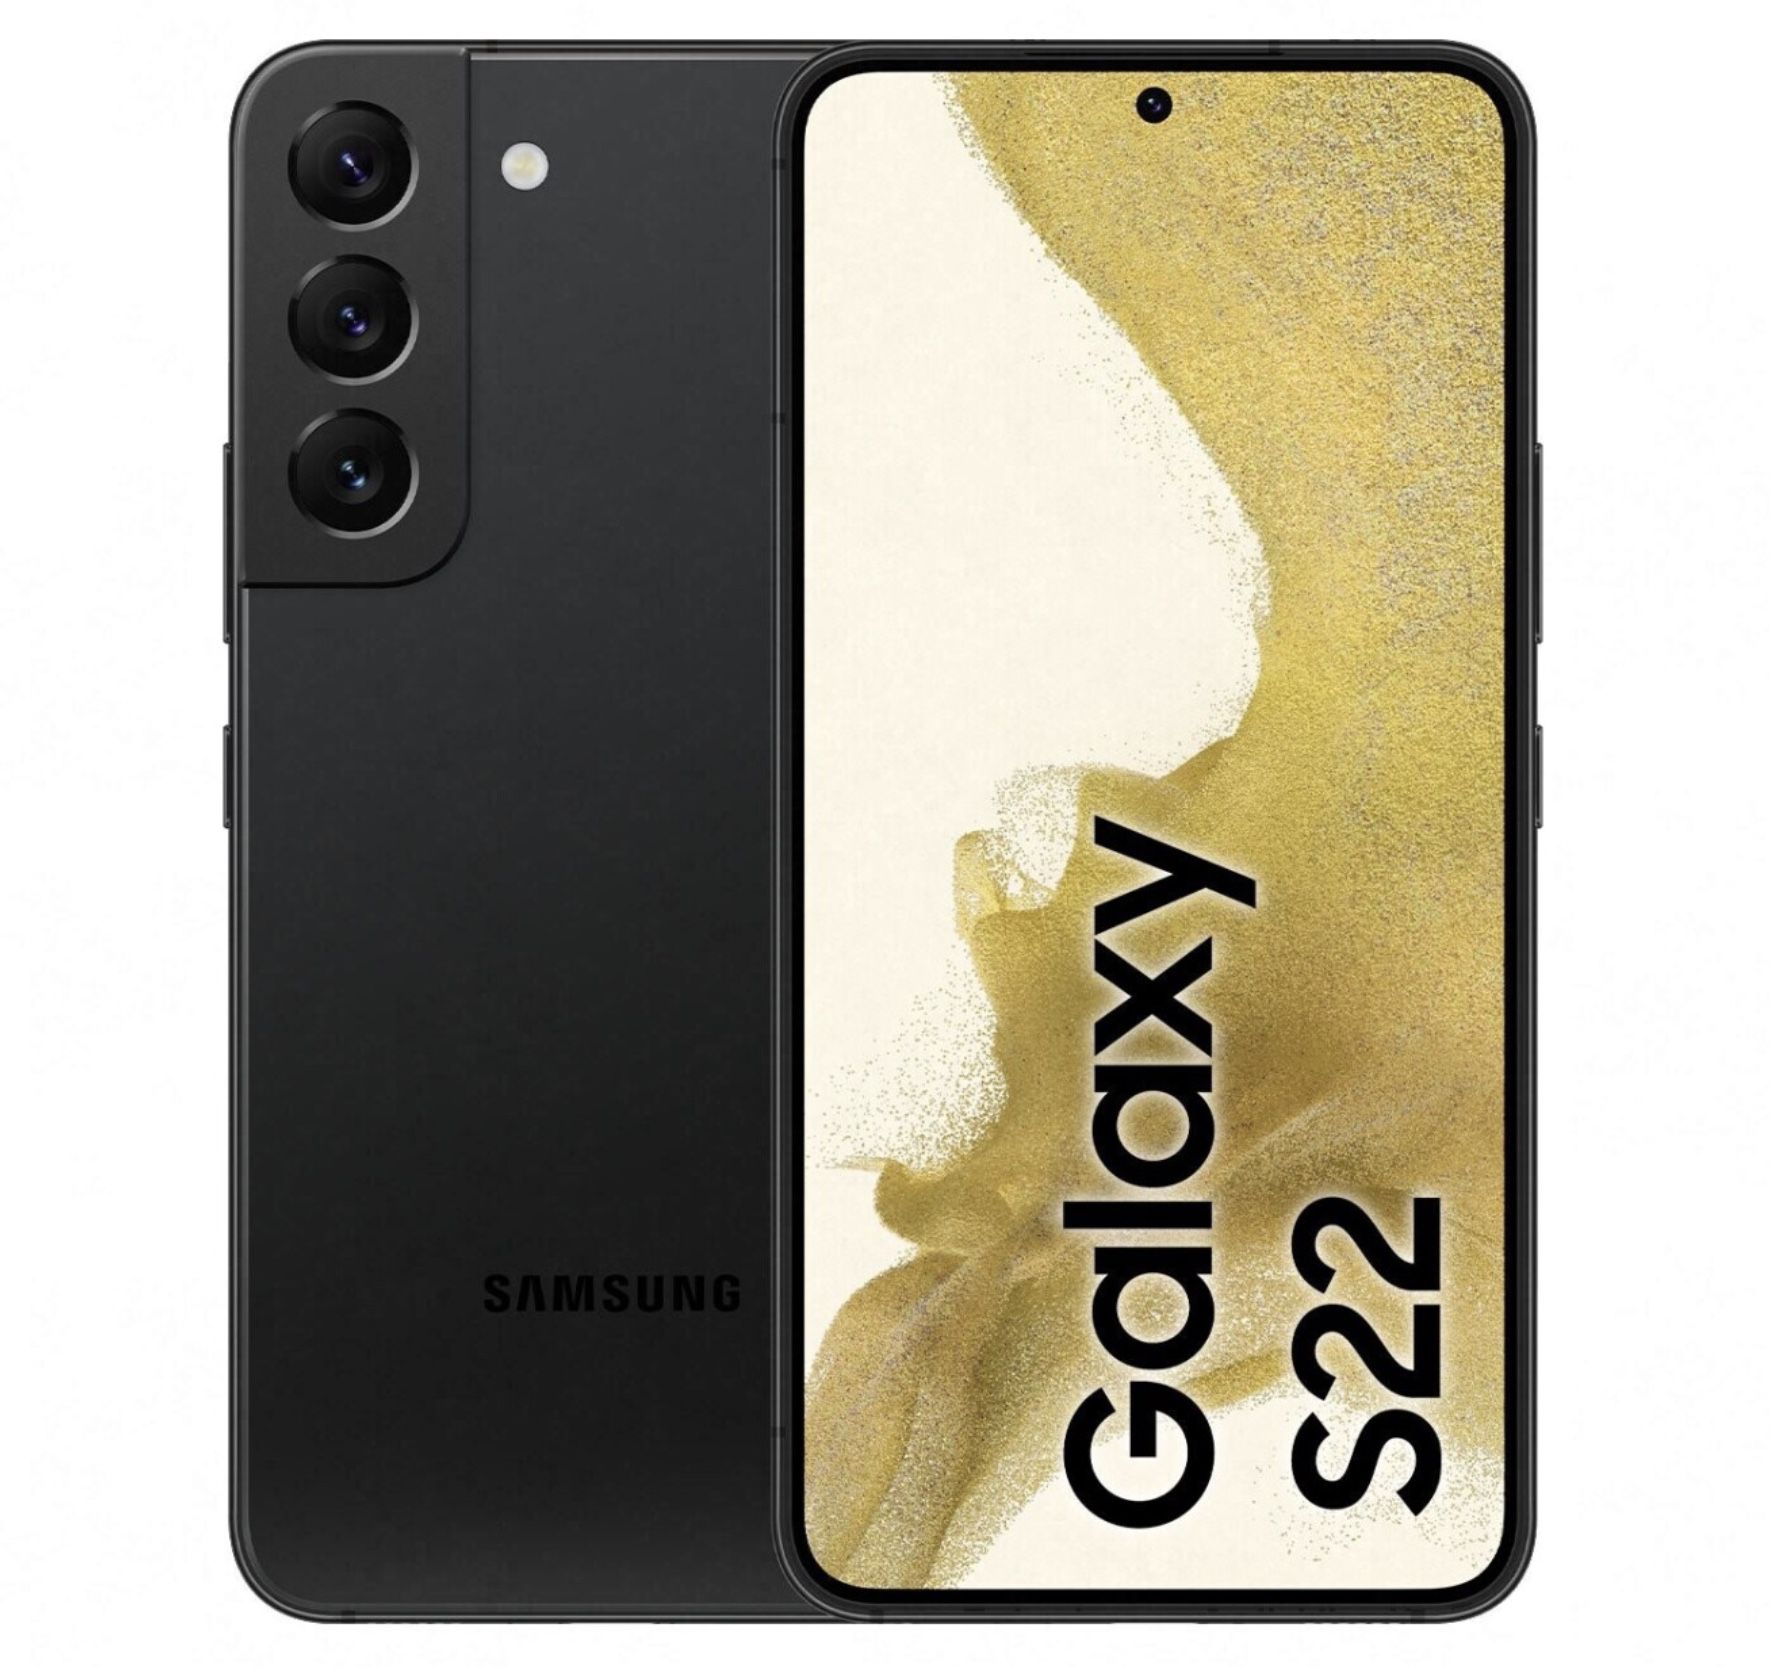 Samsung Galaxy S22 mit 128GB + Galaxy Buds Pro für 49€ + Telekom Allnet Flat mit 20GB LTE für 36,99€ mtl.